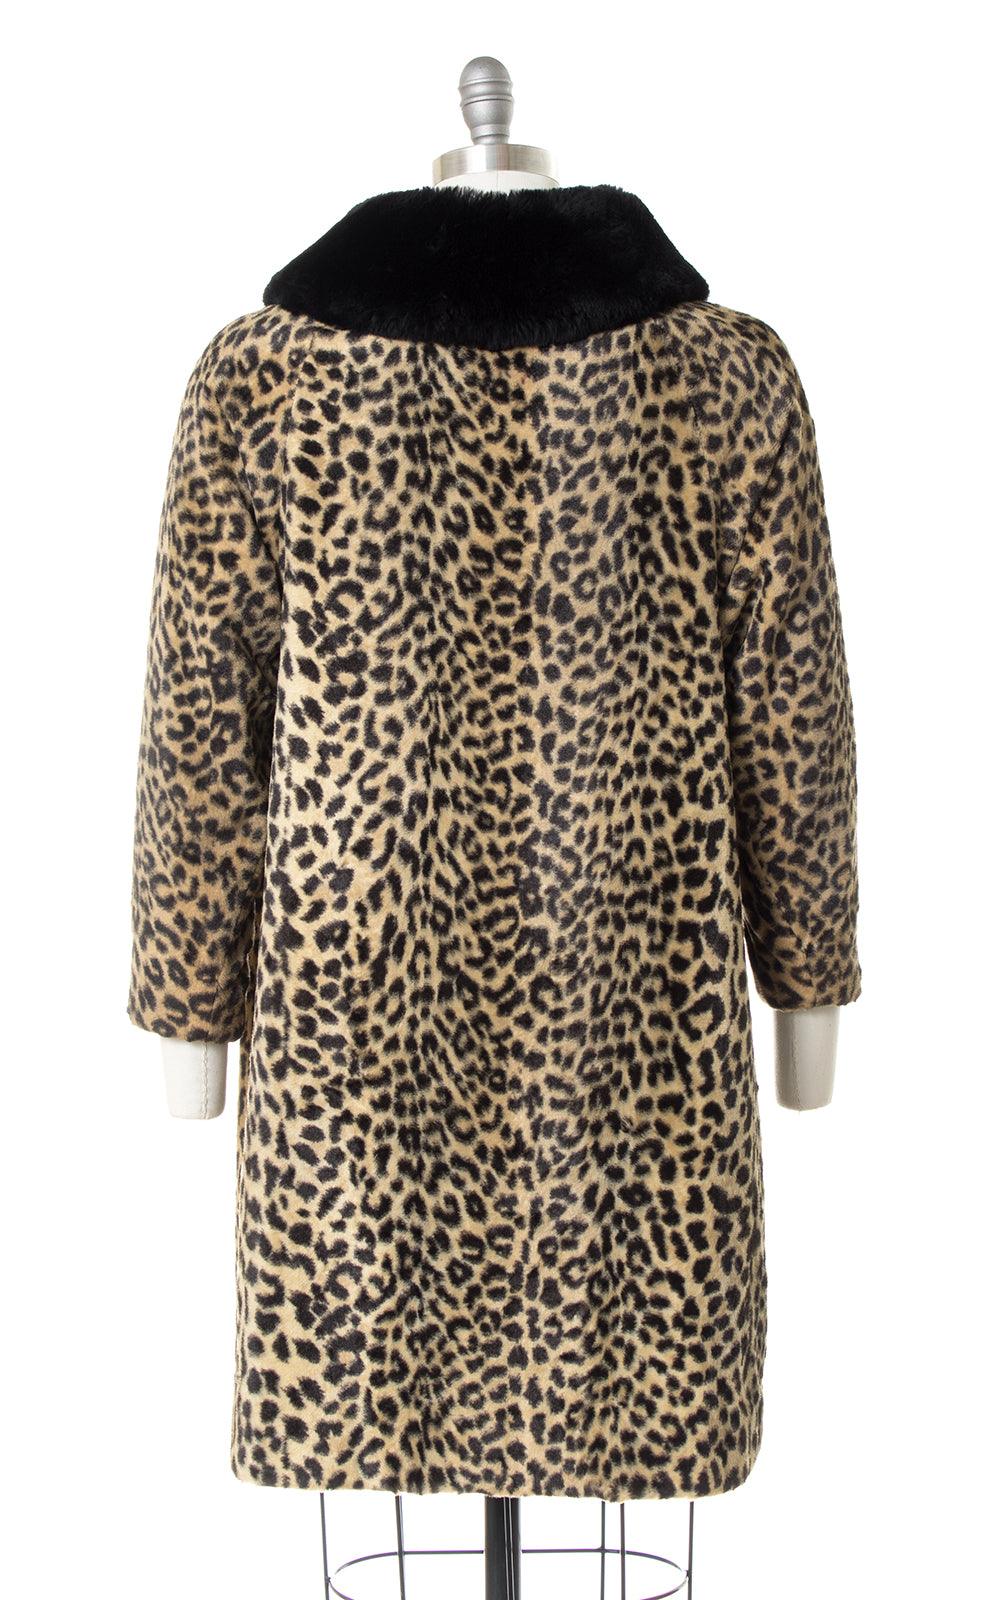 1960s Leopard Print Faux Fur Coat with Black Faux Fur Collar